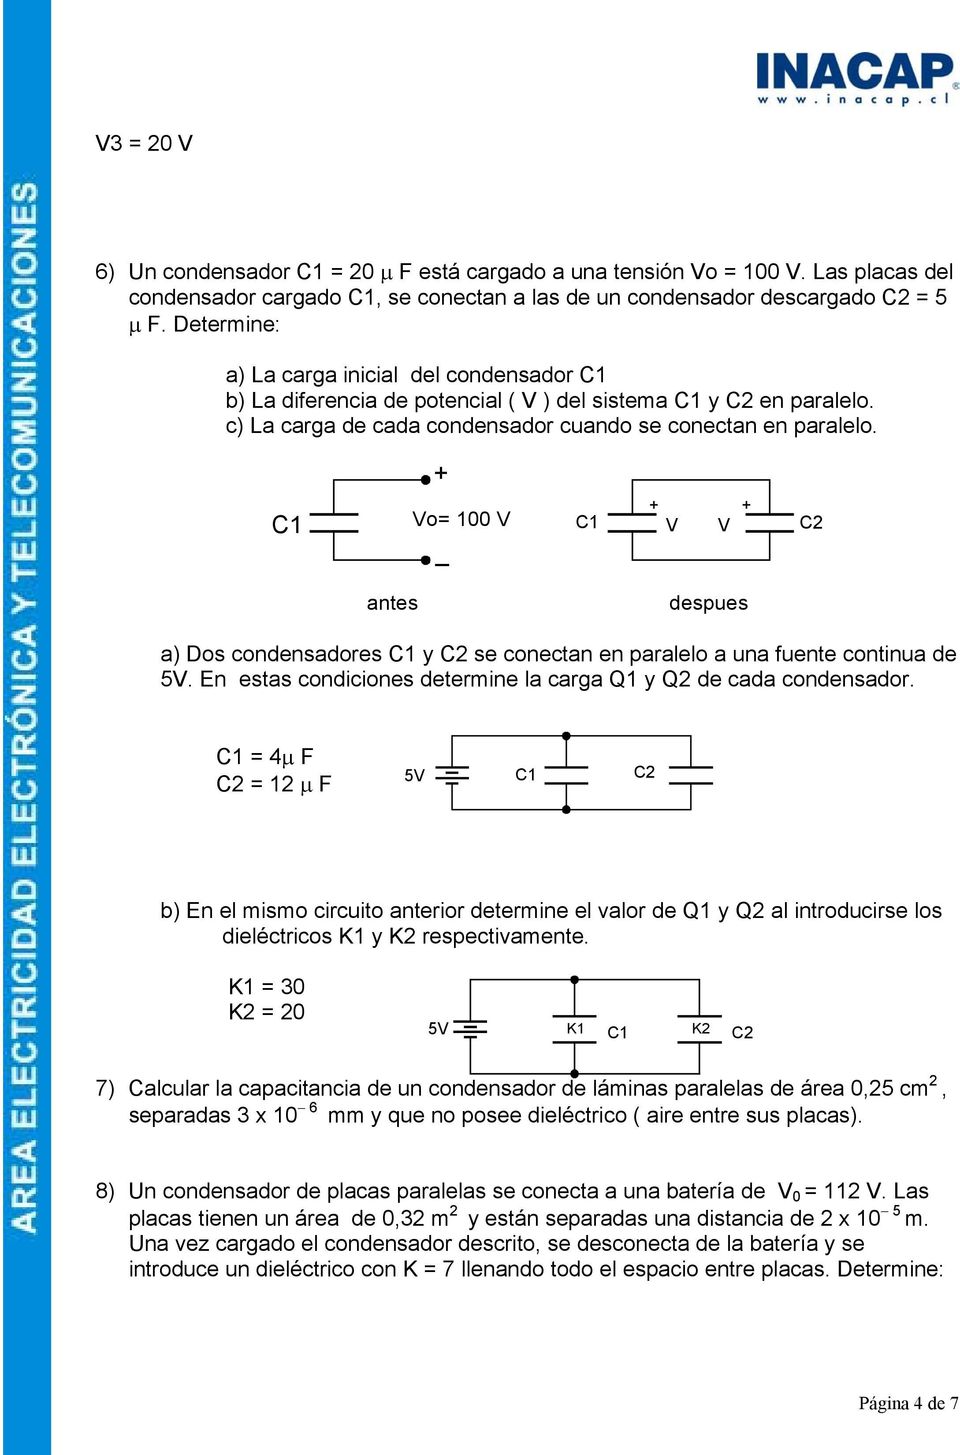 C1 Vo= 100 V _ C1 V V C2 antes despues a) Dos condensadores C1 y C2 se conectan en paralelo a una fuente continua de 5V. En estas condiciones determine la carga Q1 y Q2 de cada condensador.